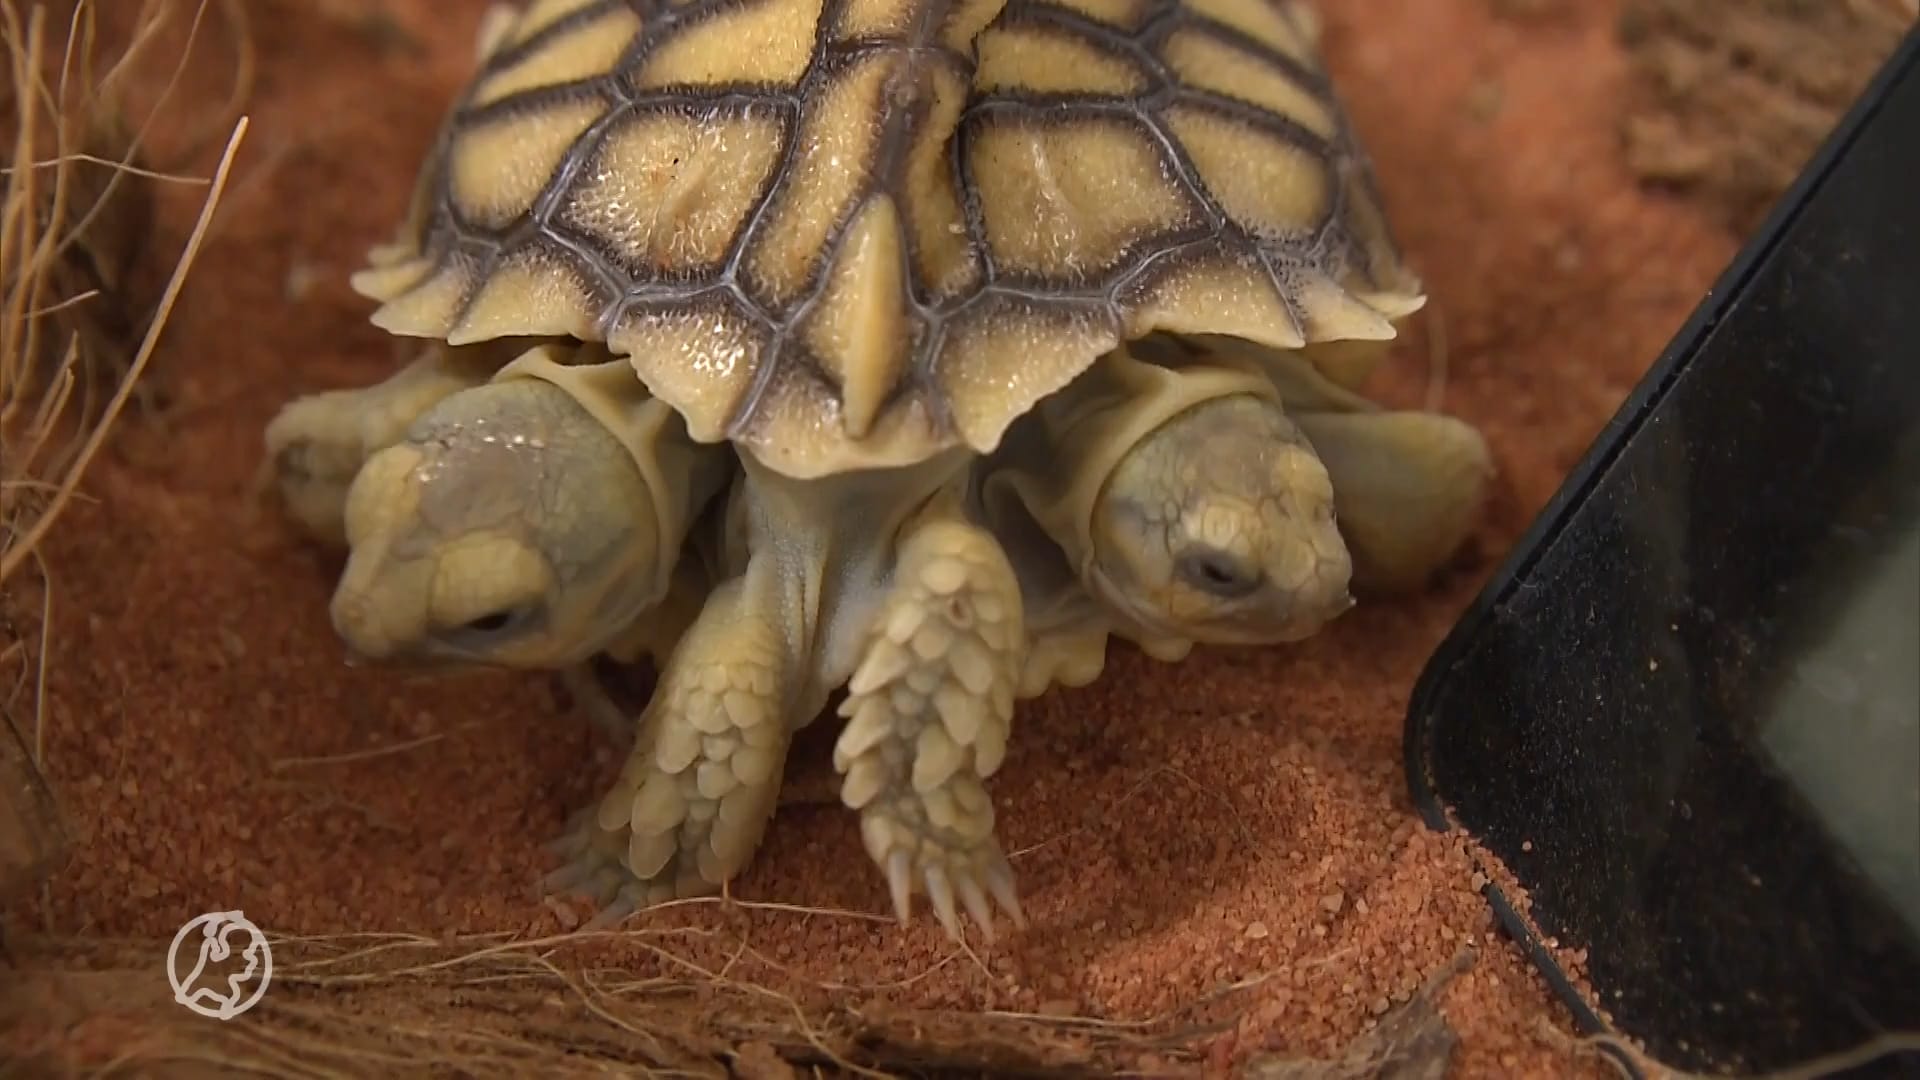 Unieke tweekoppige schildpad geboren: één hart, twee staarten en zes poten